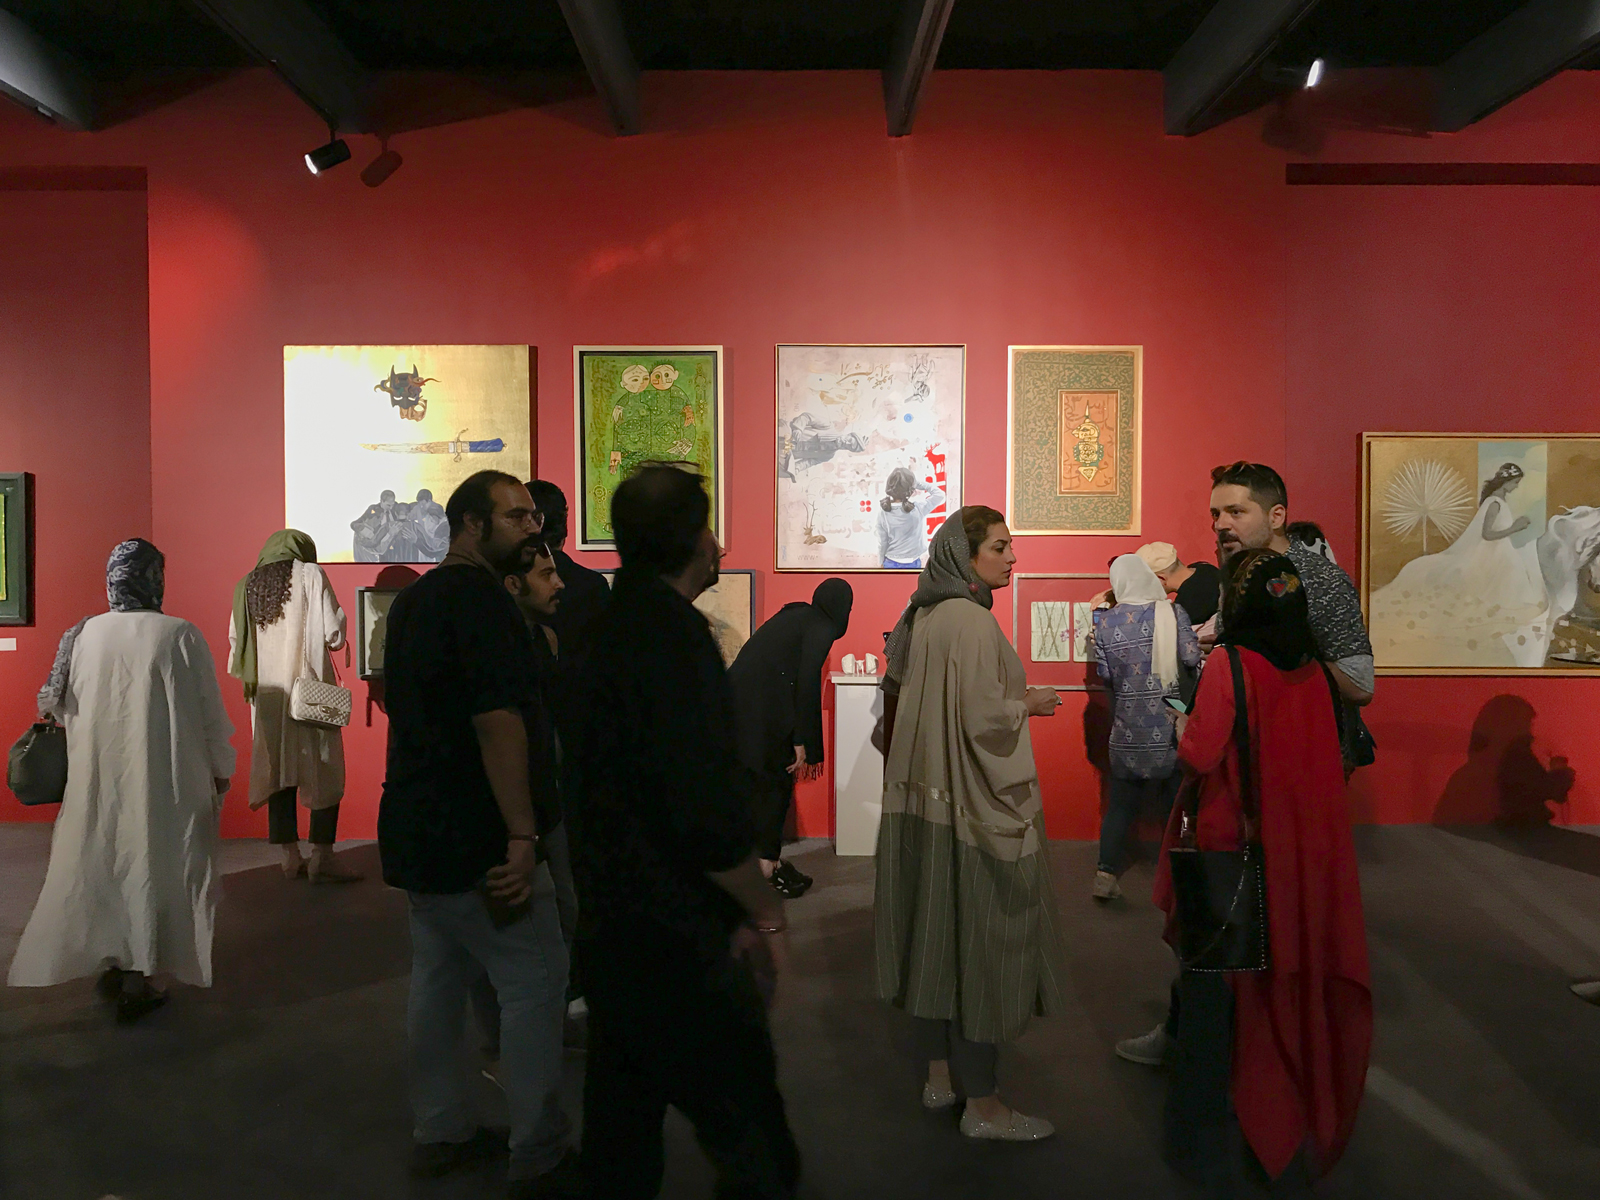 افتتاحیه نمایشگاه هفتمین جشنواره هنر برای صلح در گالری باروک شهریور 98